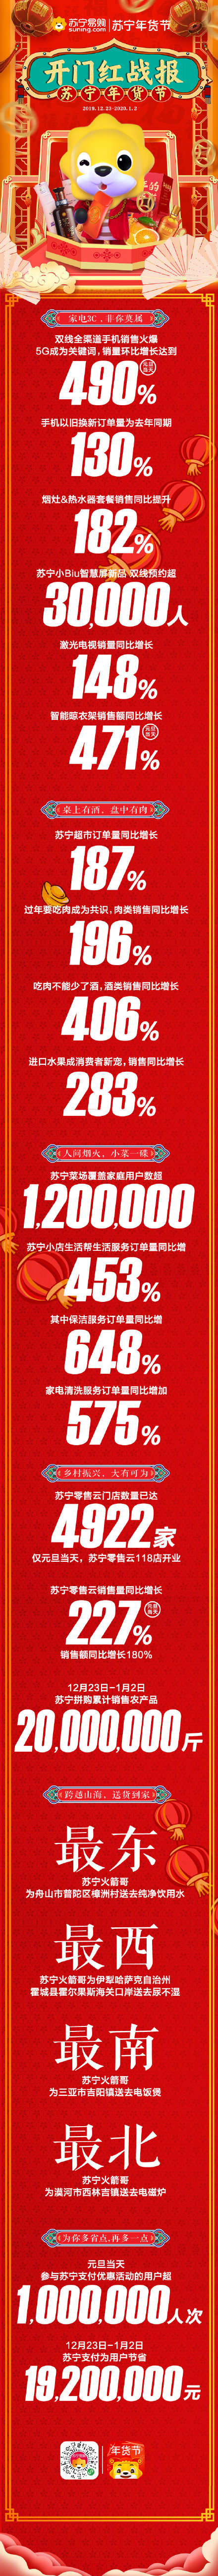 苏宁年货节开门红战报，双线全渠道手机销量环比增长达490%